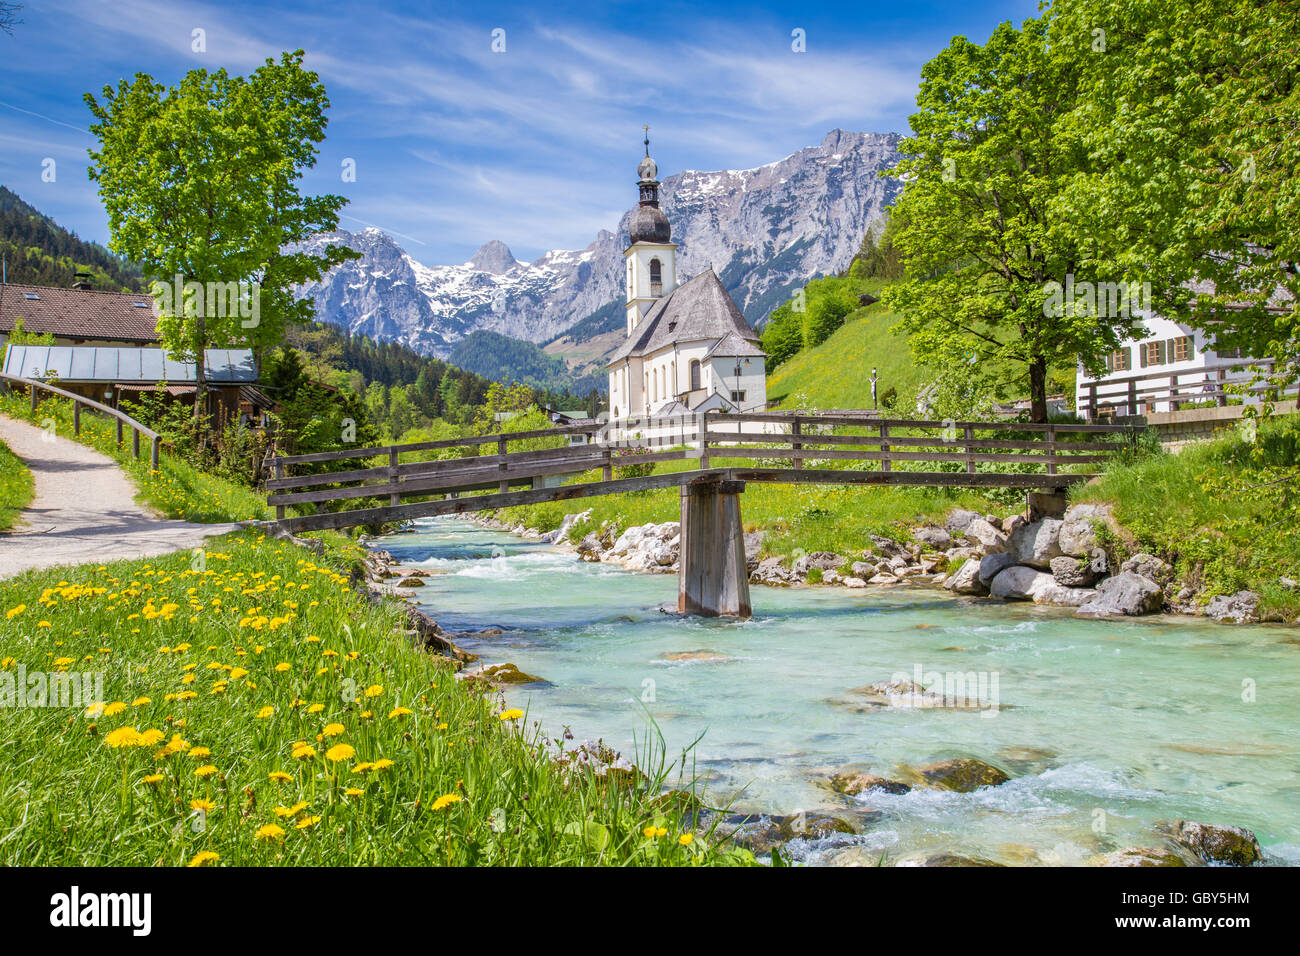 Scenic paesaggio di montagna nelle Alpi Bavaresi con la famosa Chiesa Parrocchiale di San Sebastian nel villaggio di Ramsau in primavera Foto Stock